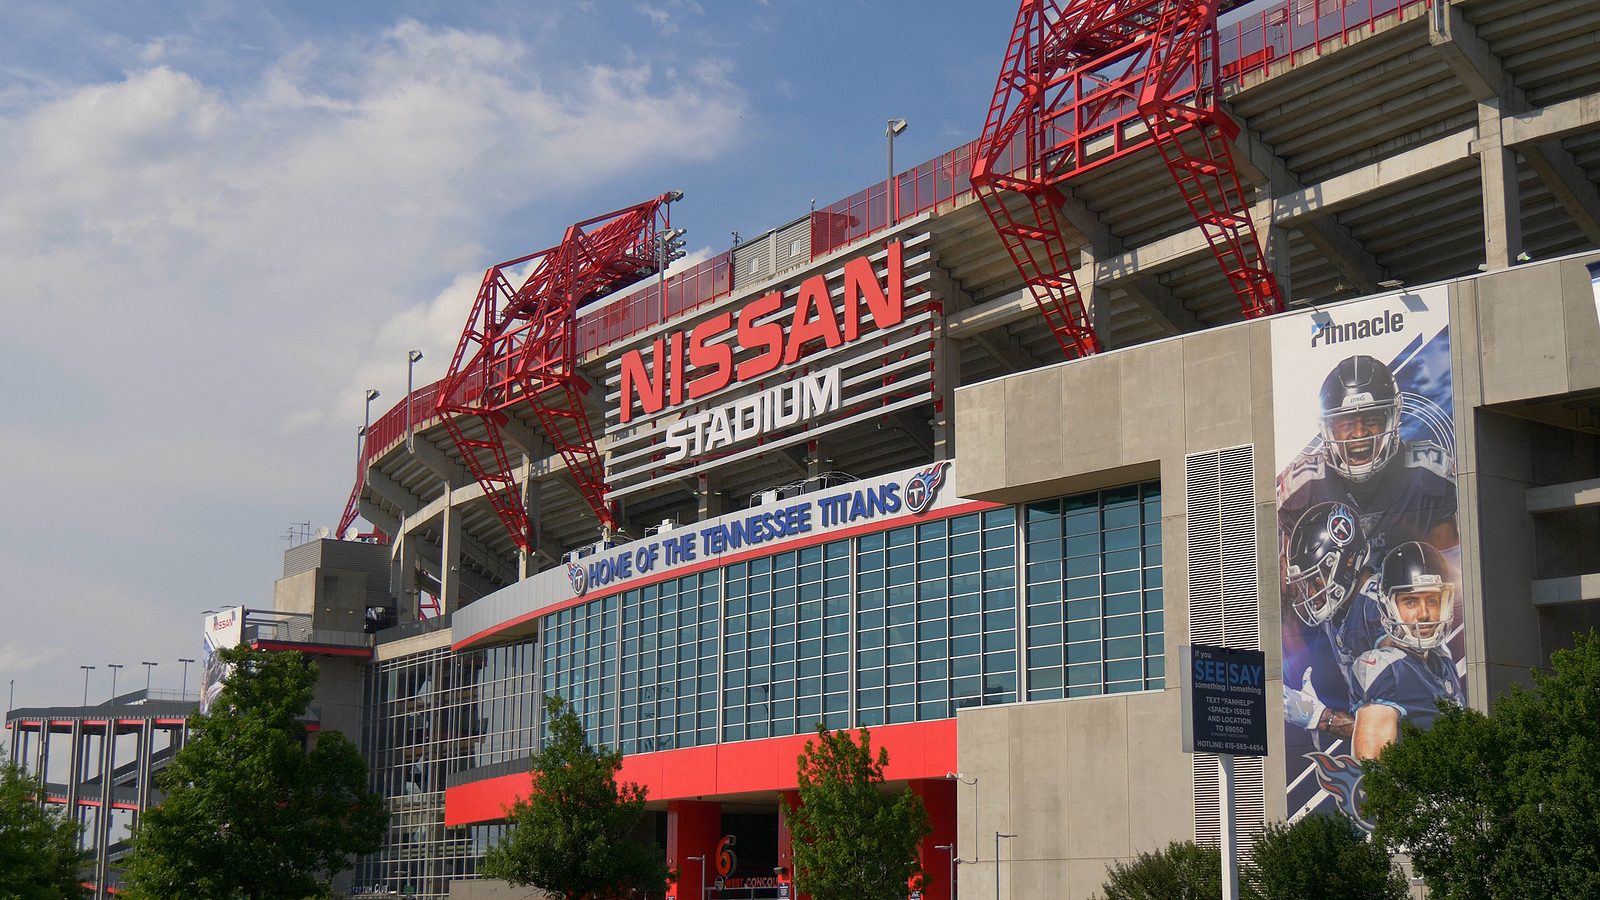 Famous landmark in Nashville - the Nissan Stadium - NASHVILLE, USA - JUNE 17, 2019